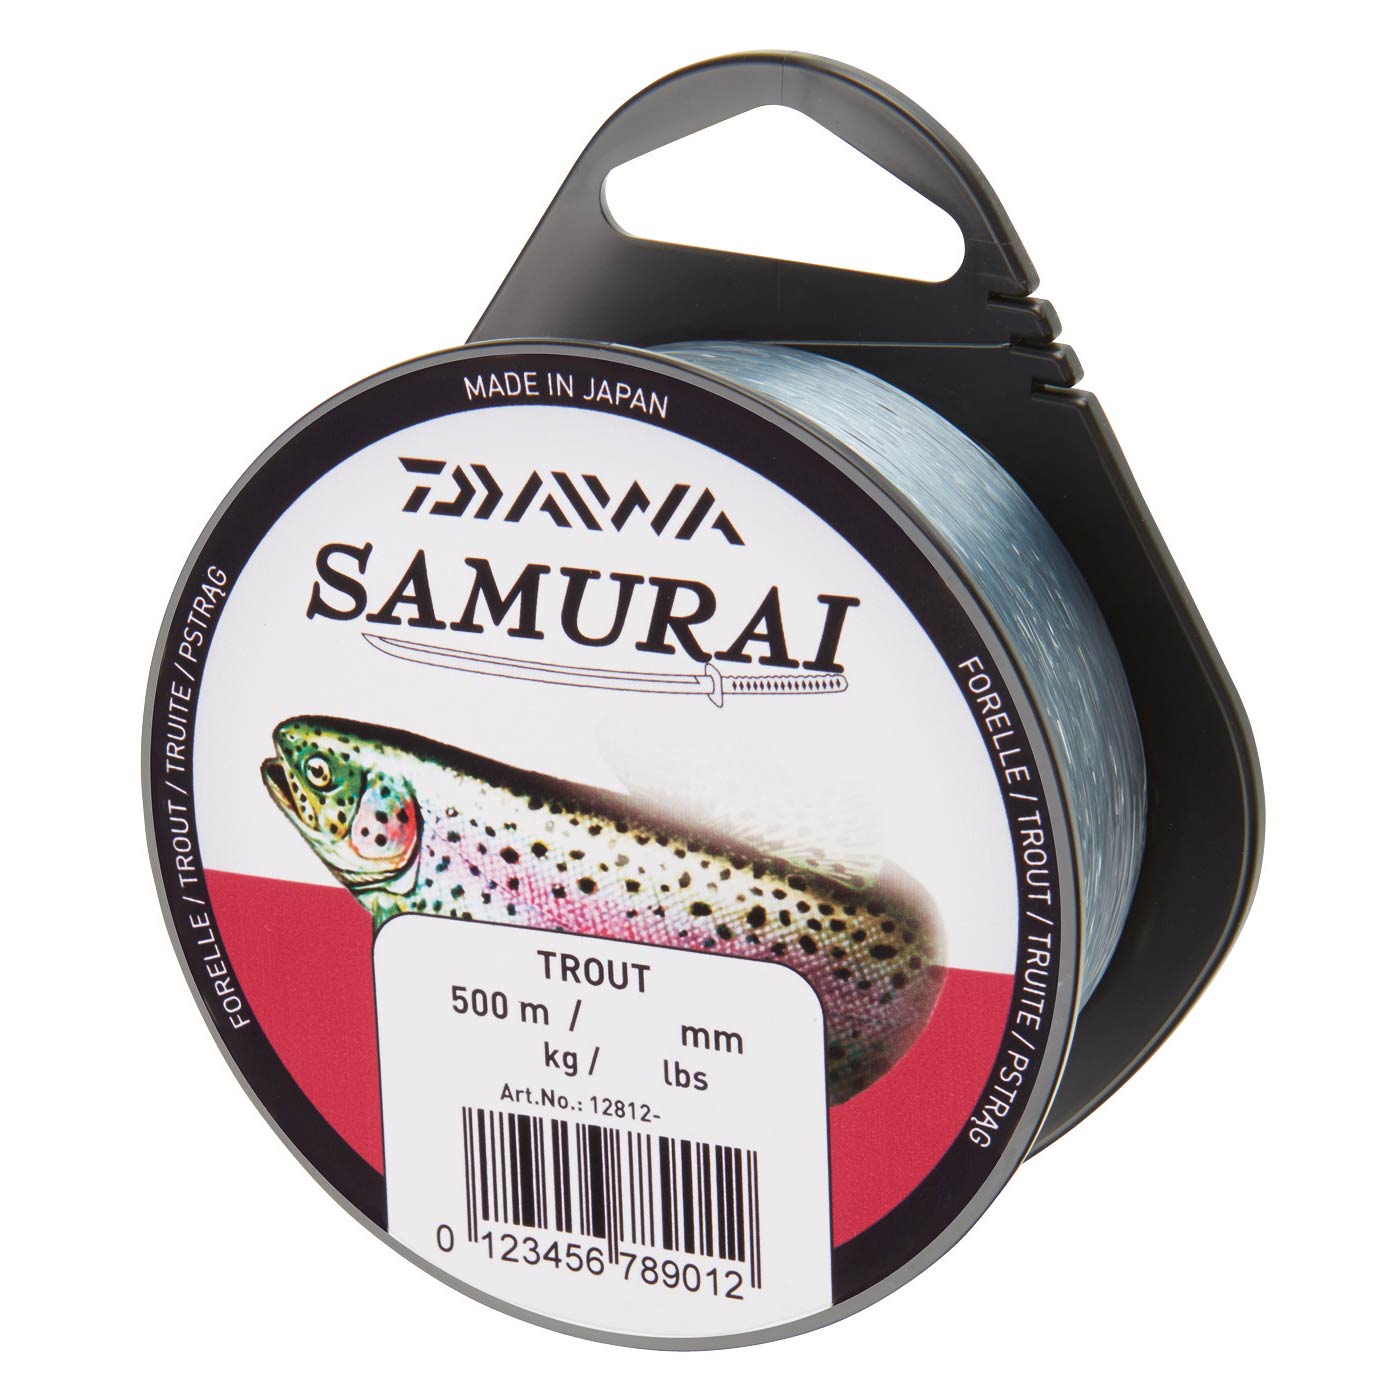 Samurai Forelle - 500m